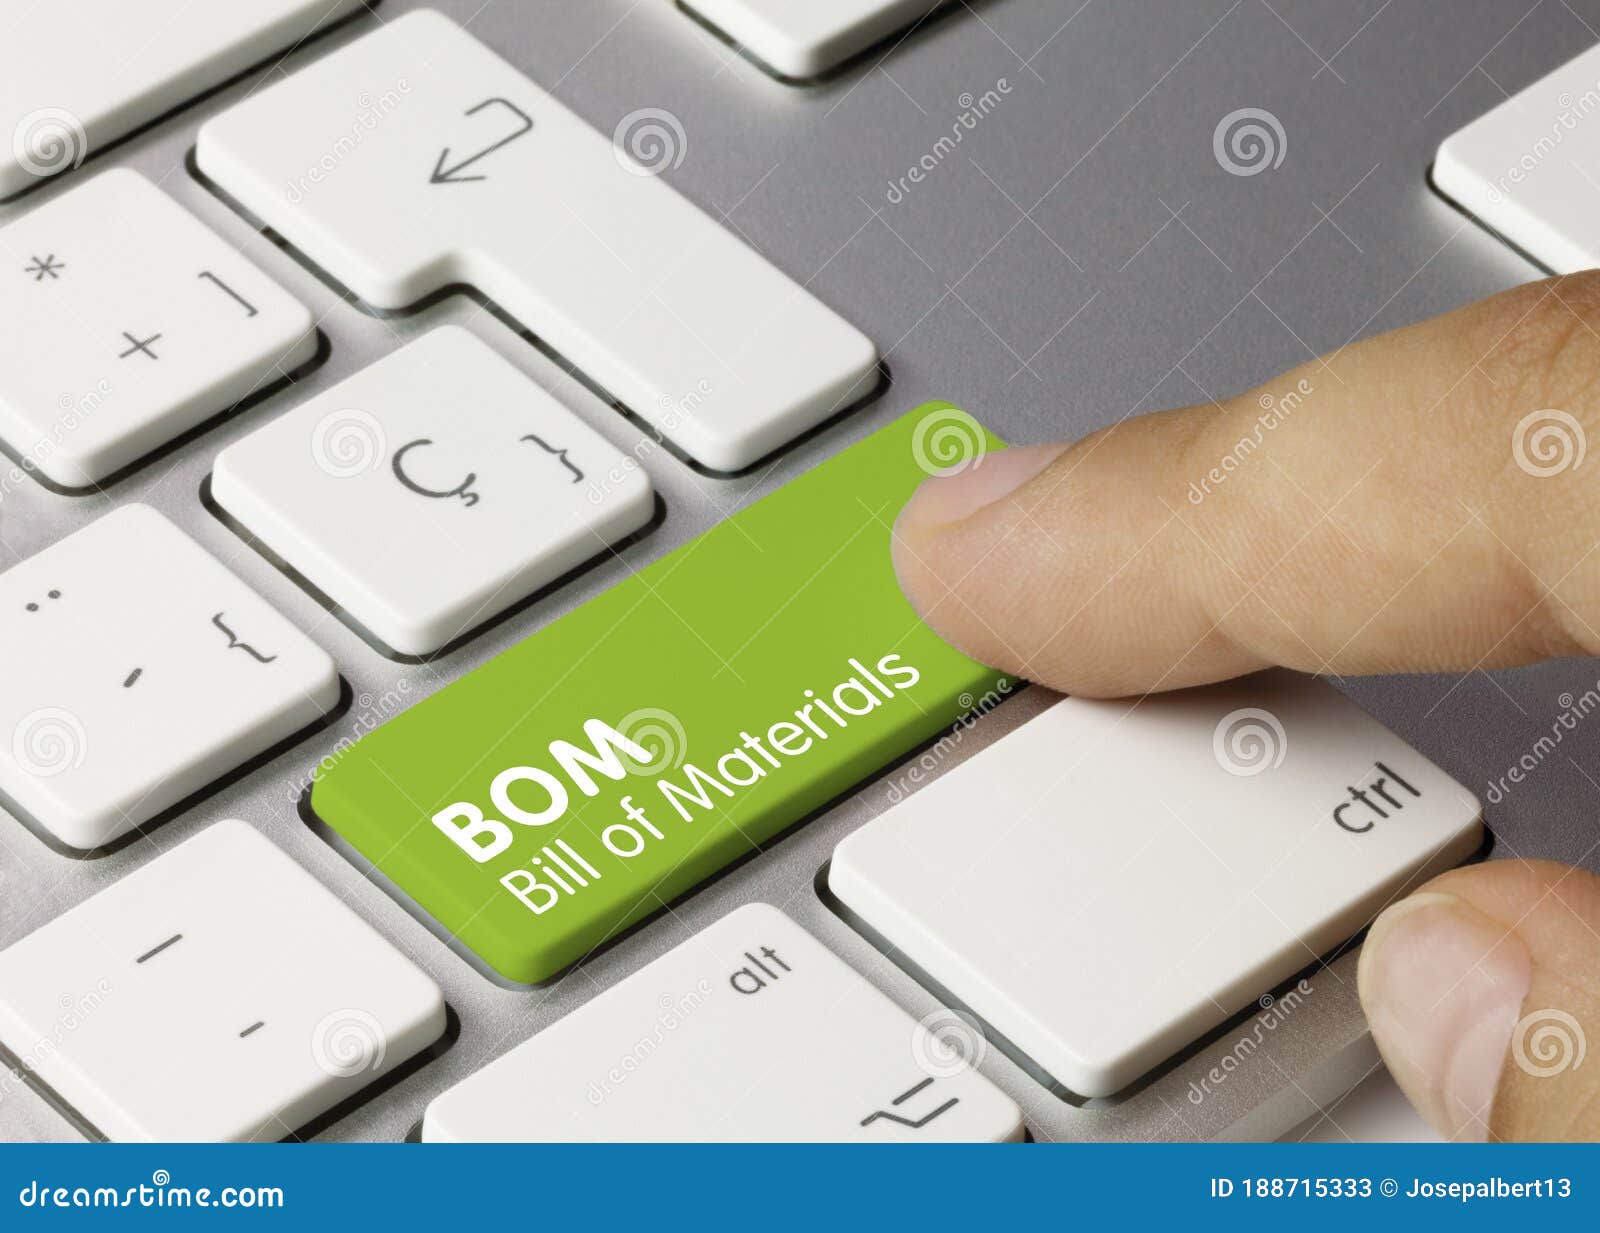 bom bill of materials - inscription on green keyboard key